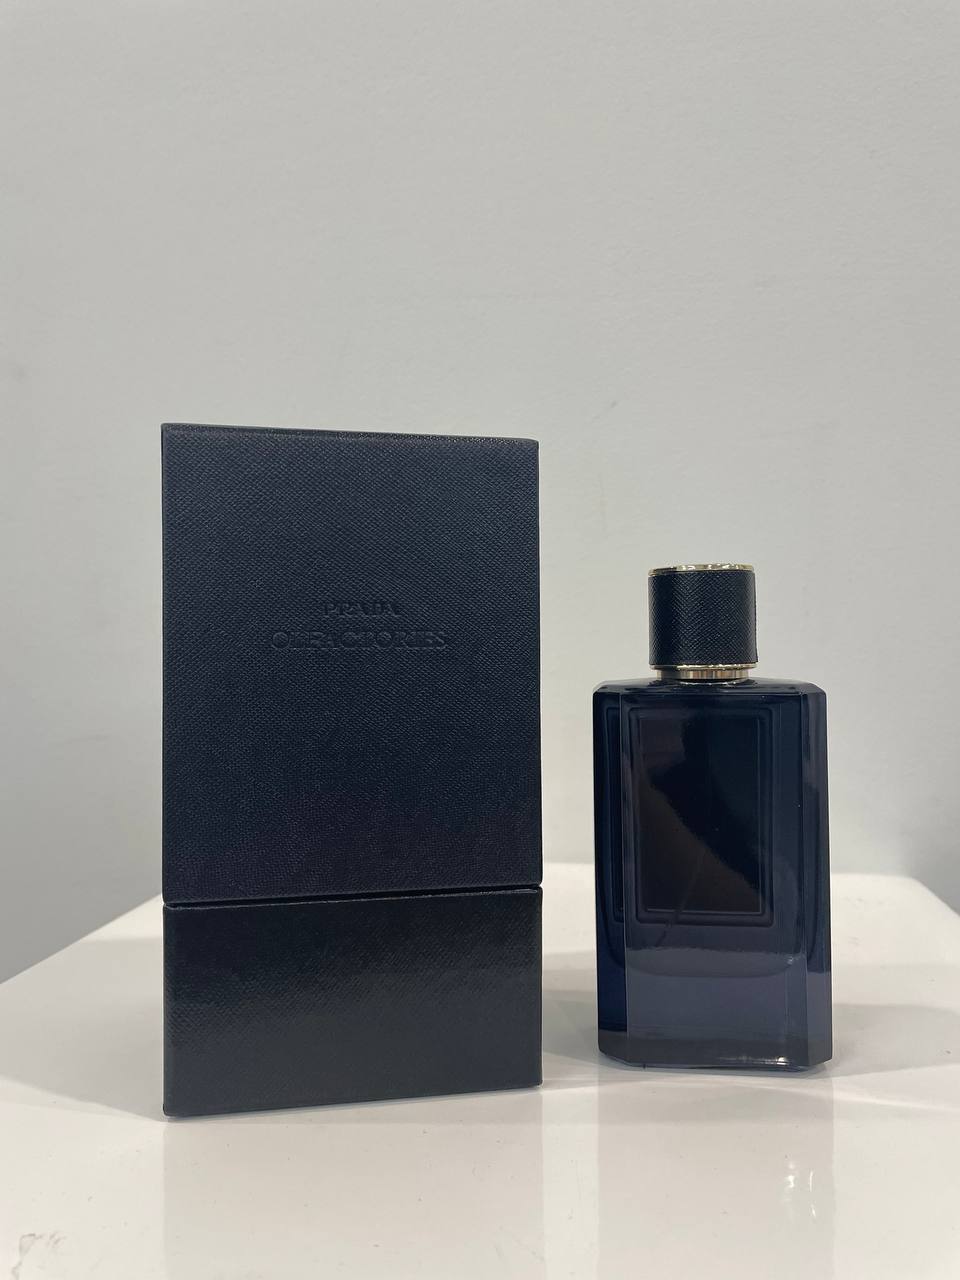 PRADA DARK LIGHT AMBER OLFACTORIES 100ML – Perfume